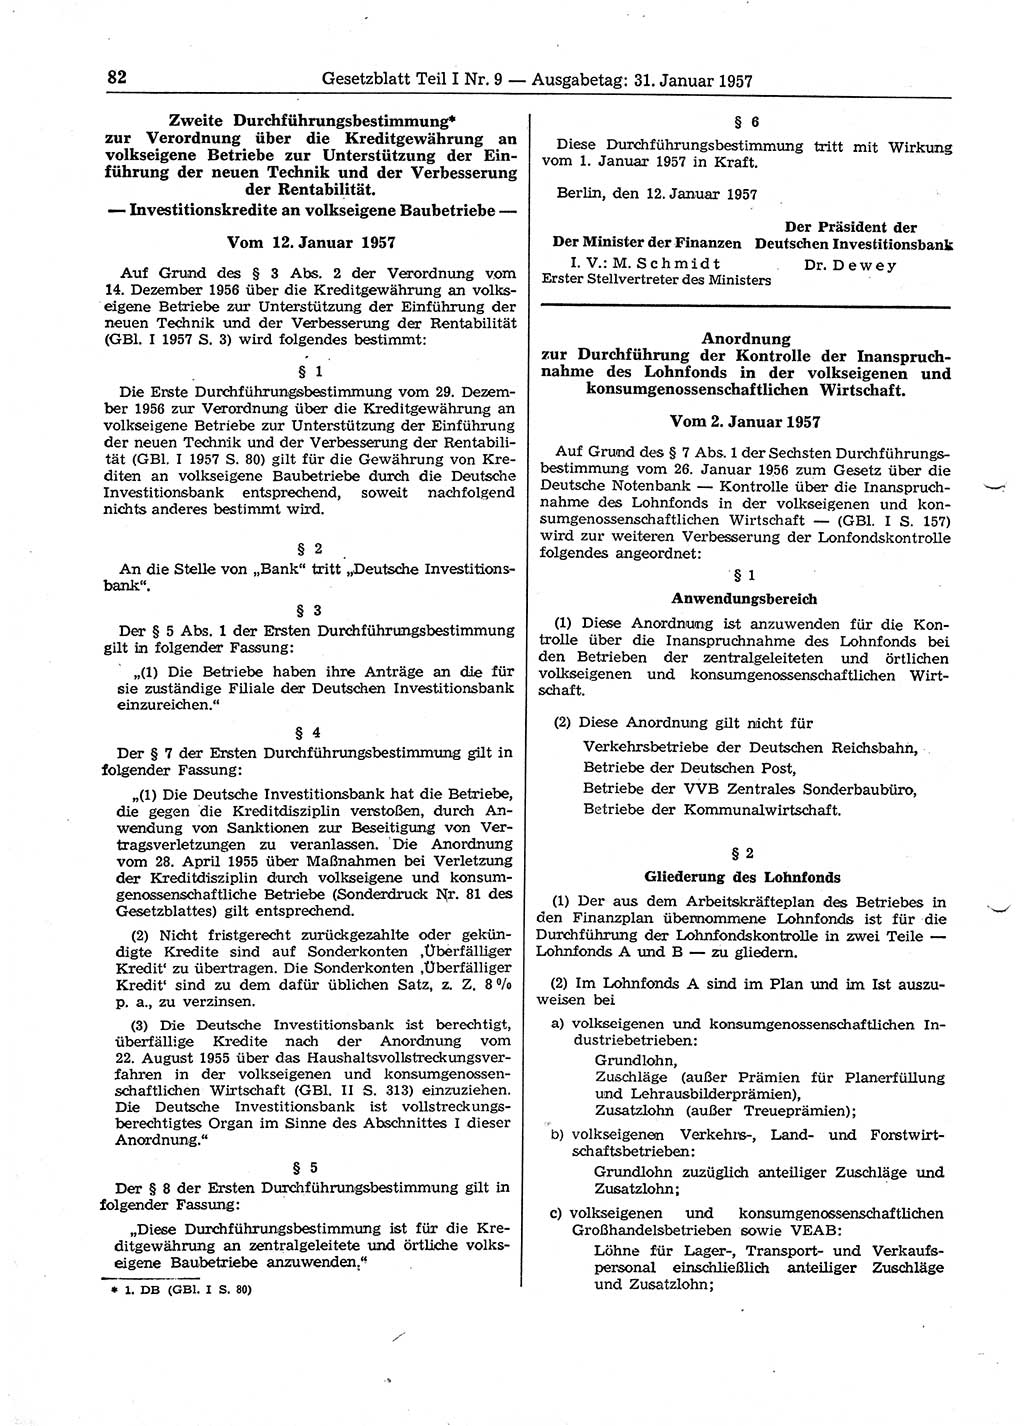 Gesetzblatt (GBl.) der Deutschen Demokratischen Republik (DDR) Teil Ⅰ 1957, Seite 82 (GBl. DDR Ⅰ 1957, S. 82)